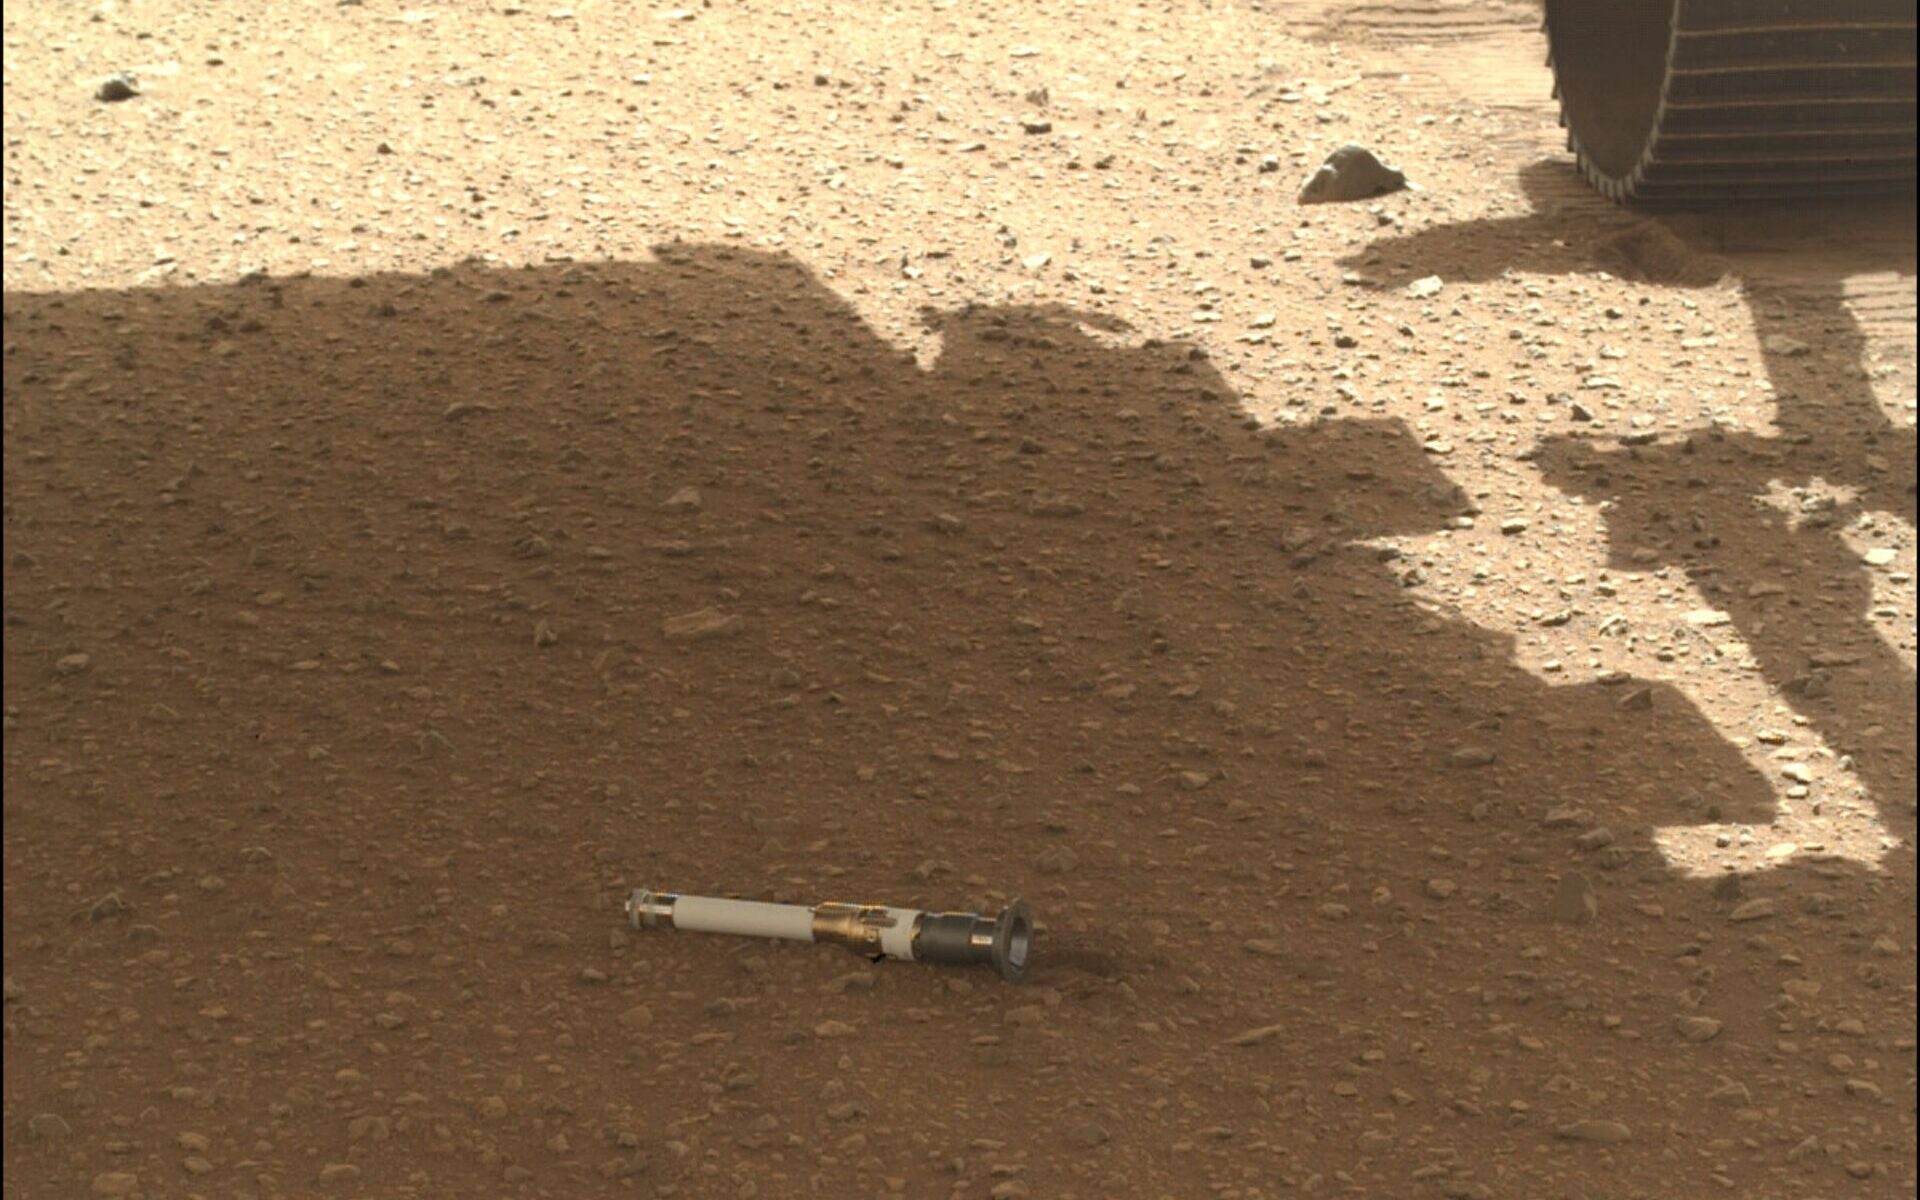 El rover Perseverance dejó caer su primer depósito de muestras en Marte 